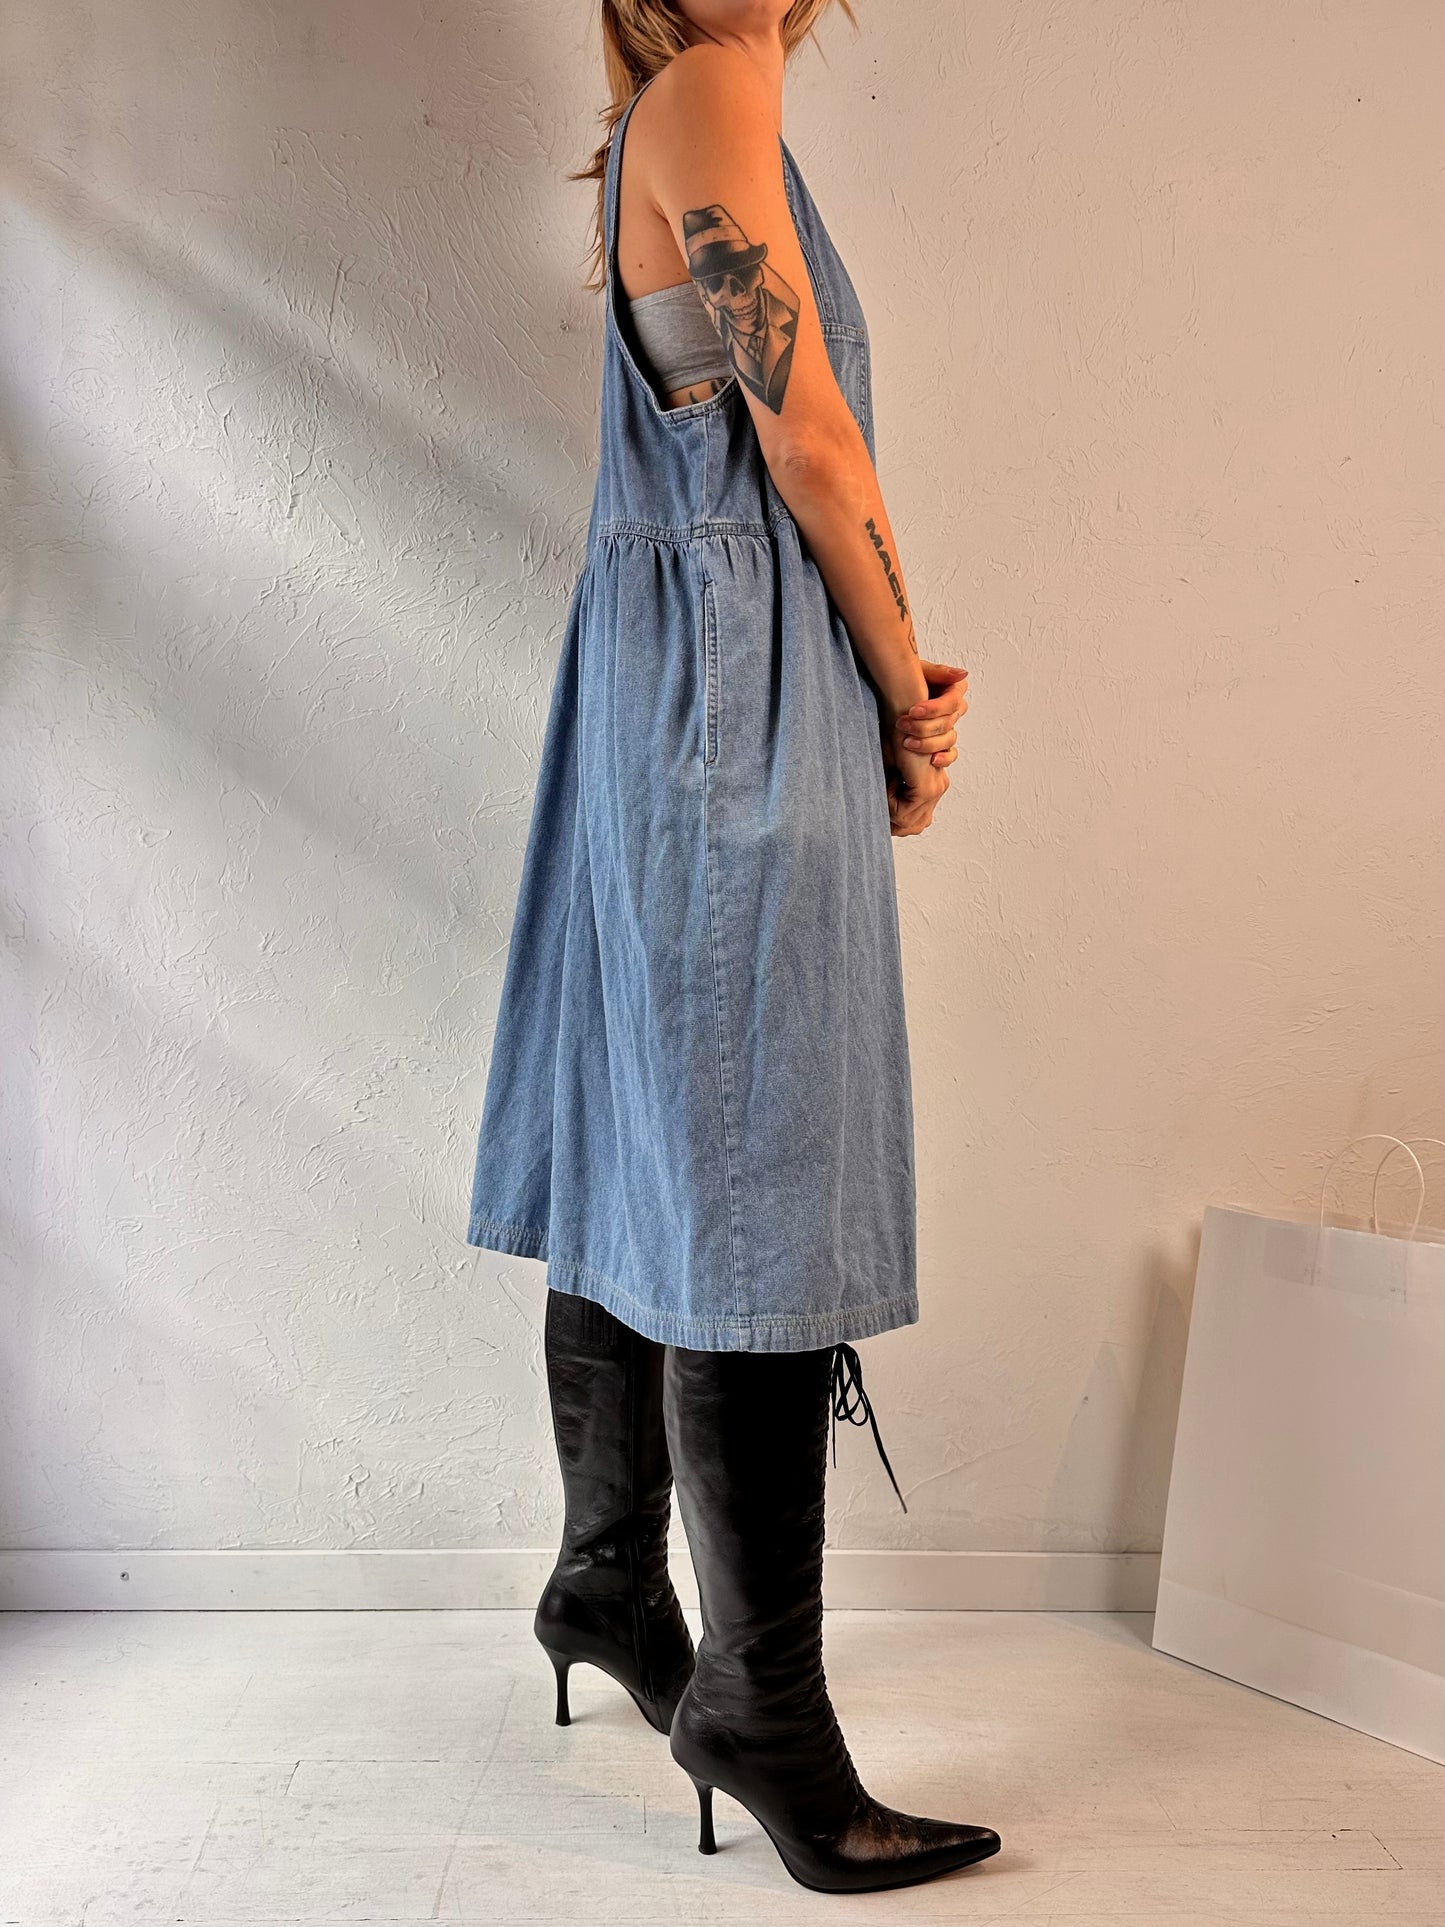 90s 'Sigrid Olsen' Denim Dress / Large